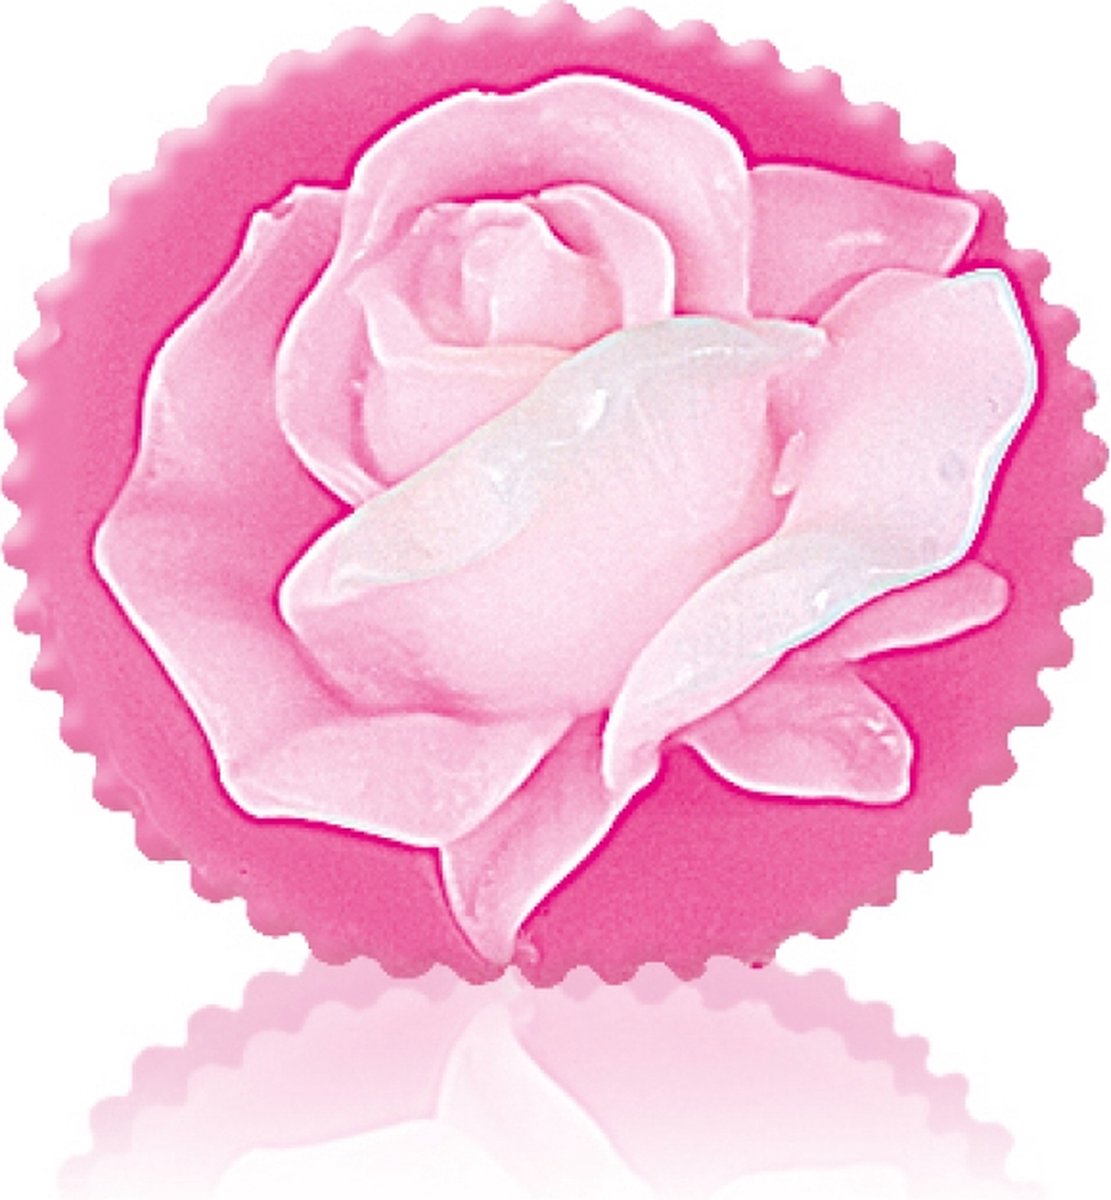 Glycerin soap Rose Blossom | Rozen cosmetica met 100% natuurlijke Bulgaarse rozenolie en rozenwater